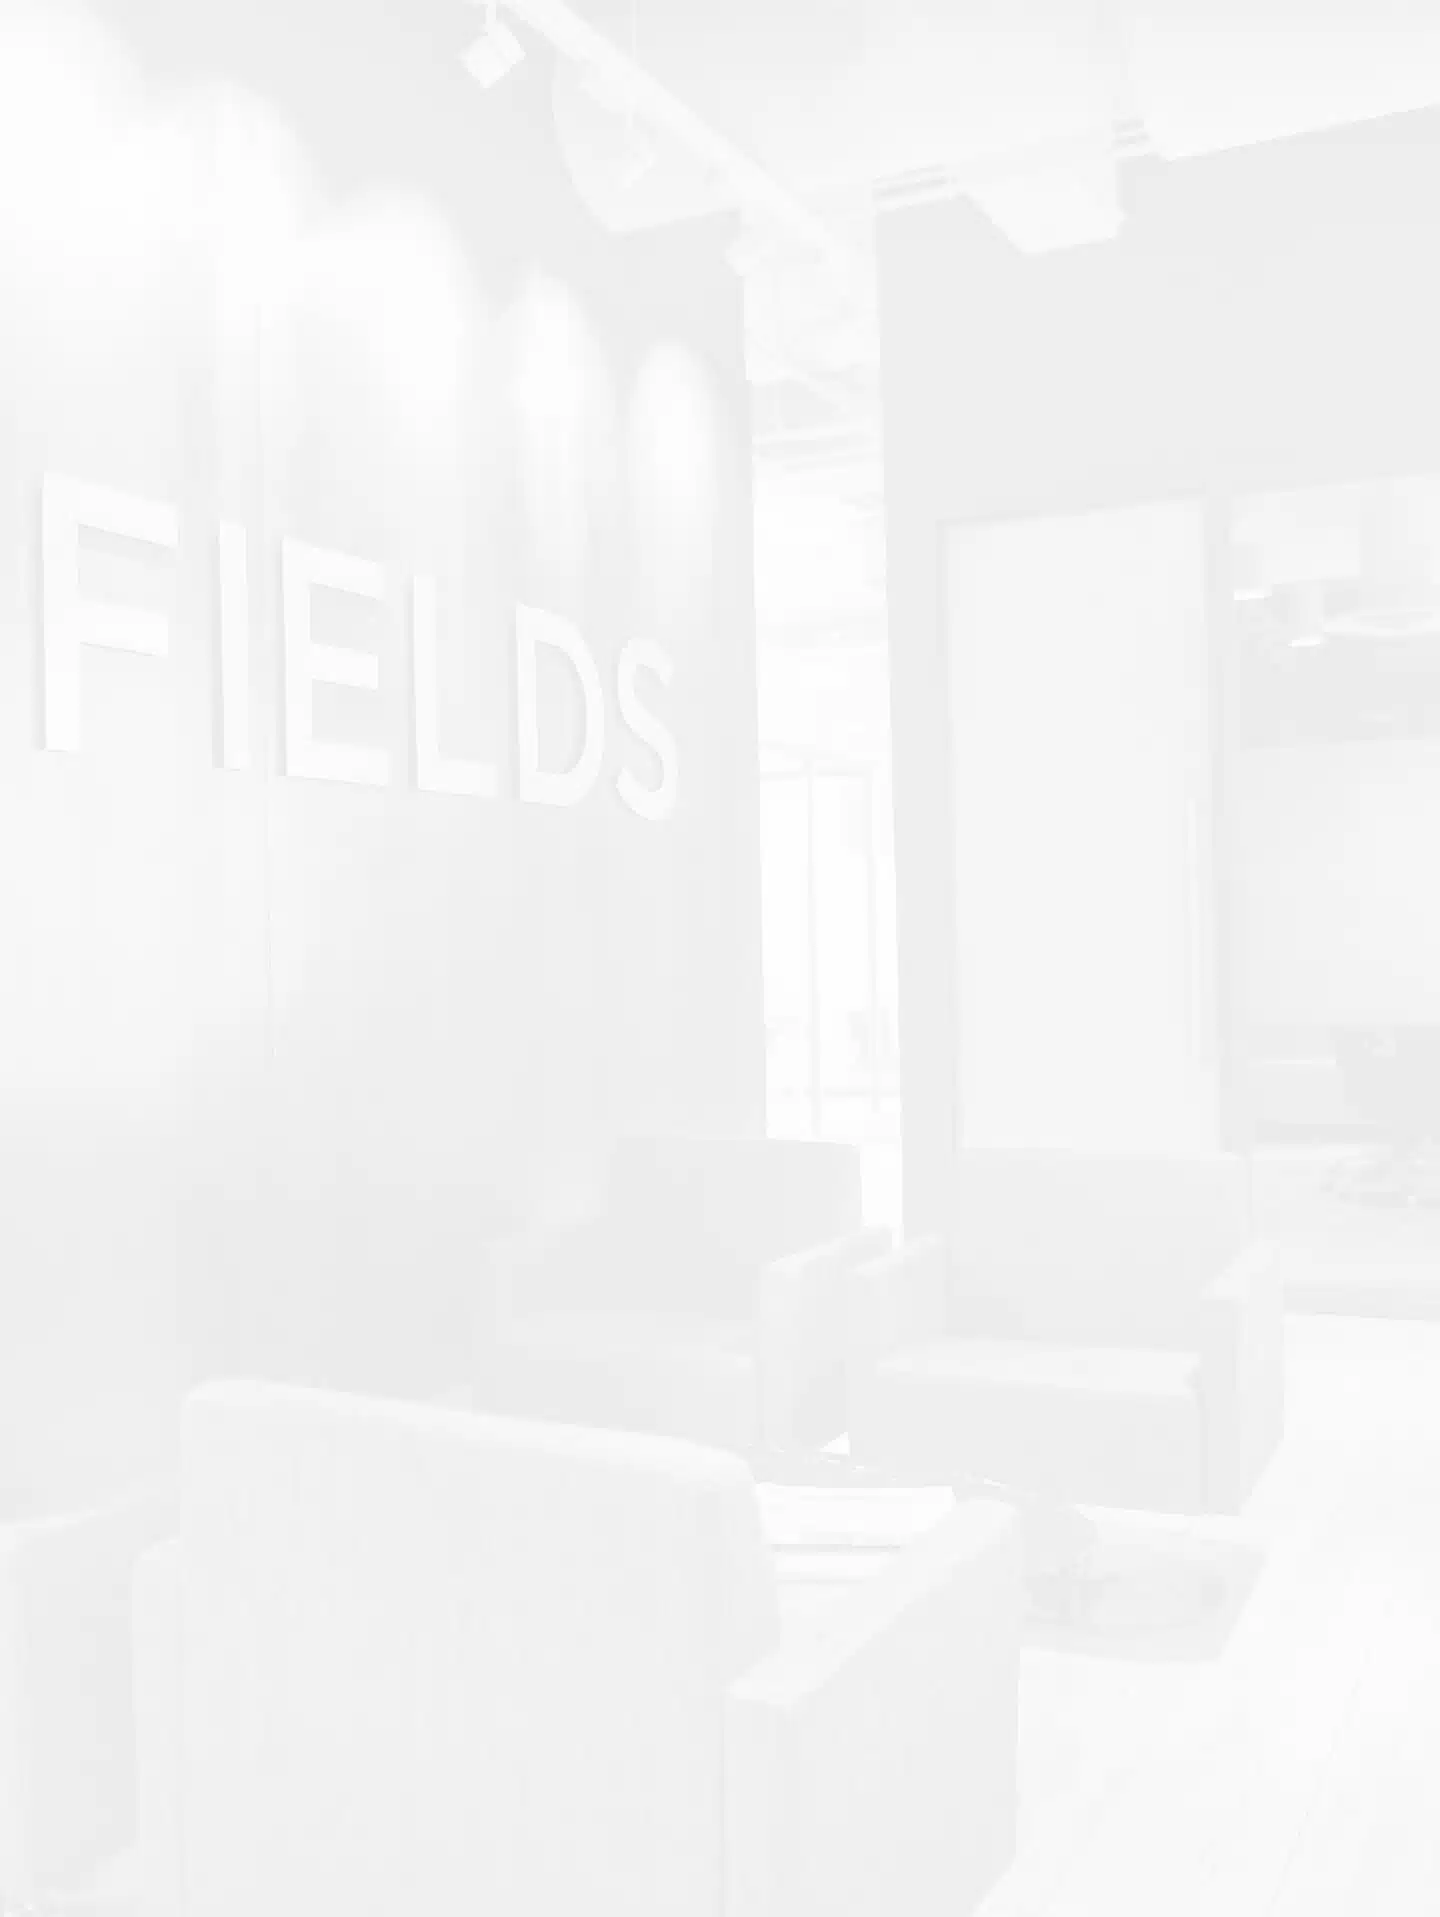 Faded Fields law office image